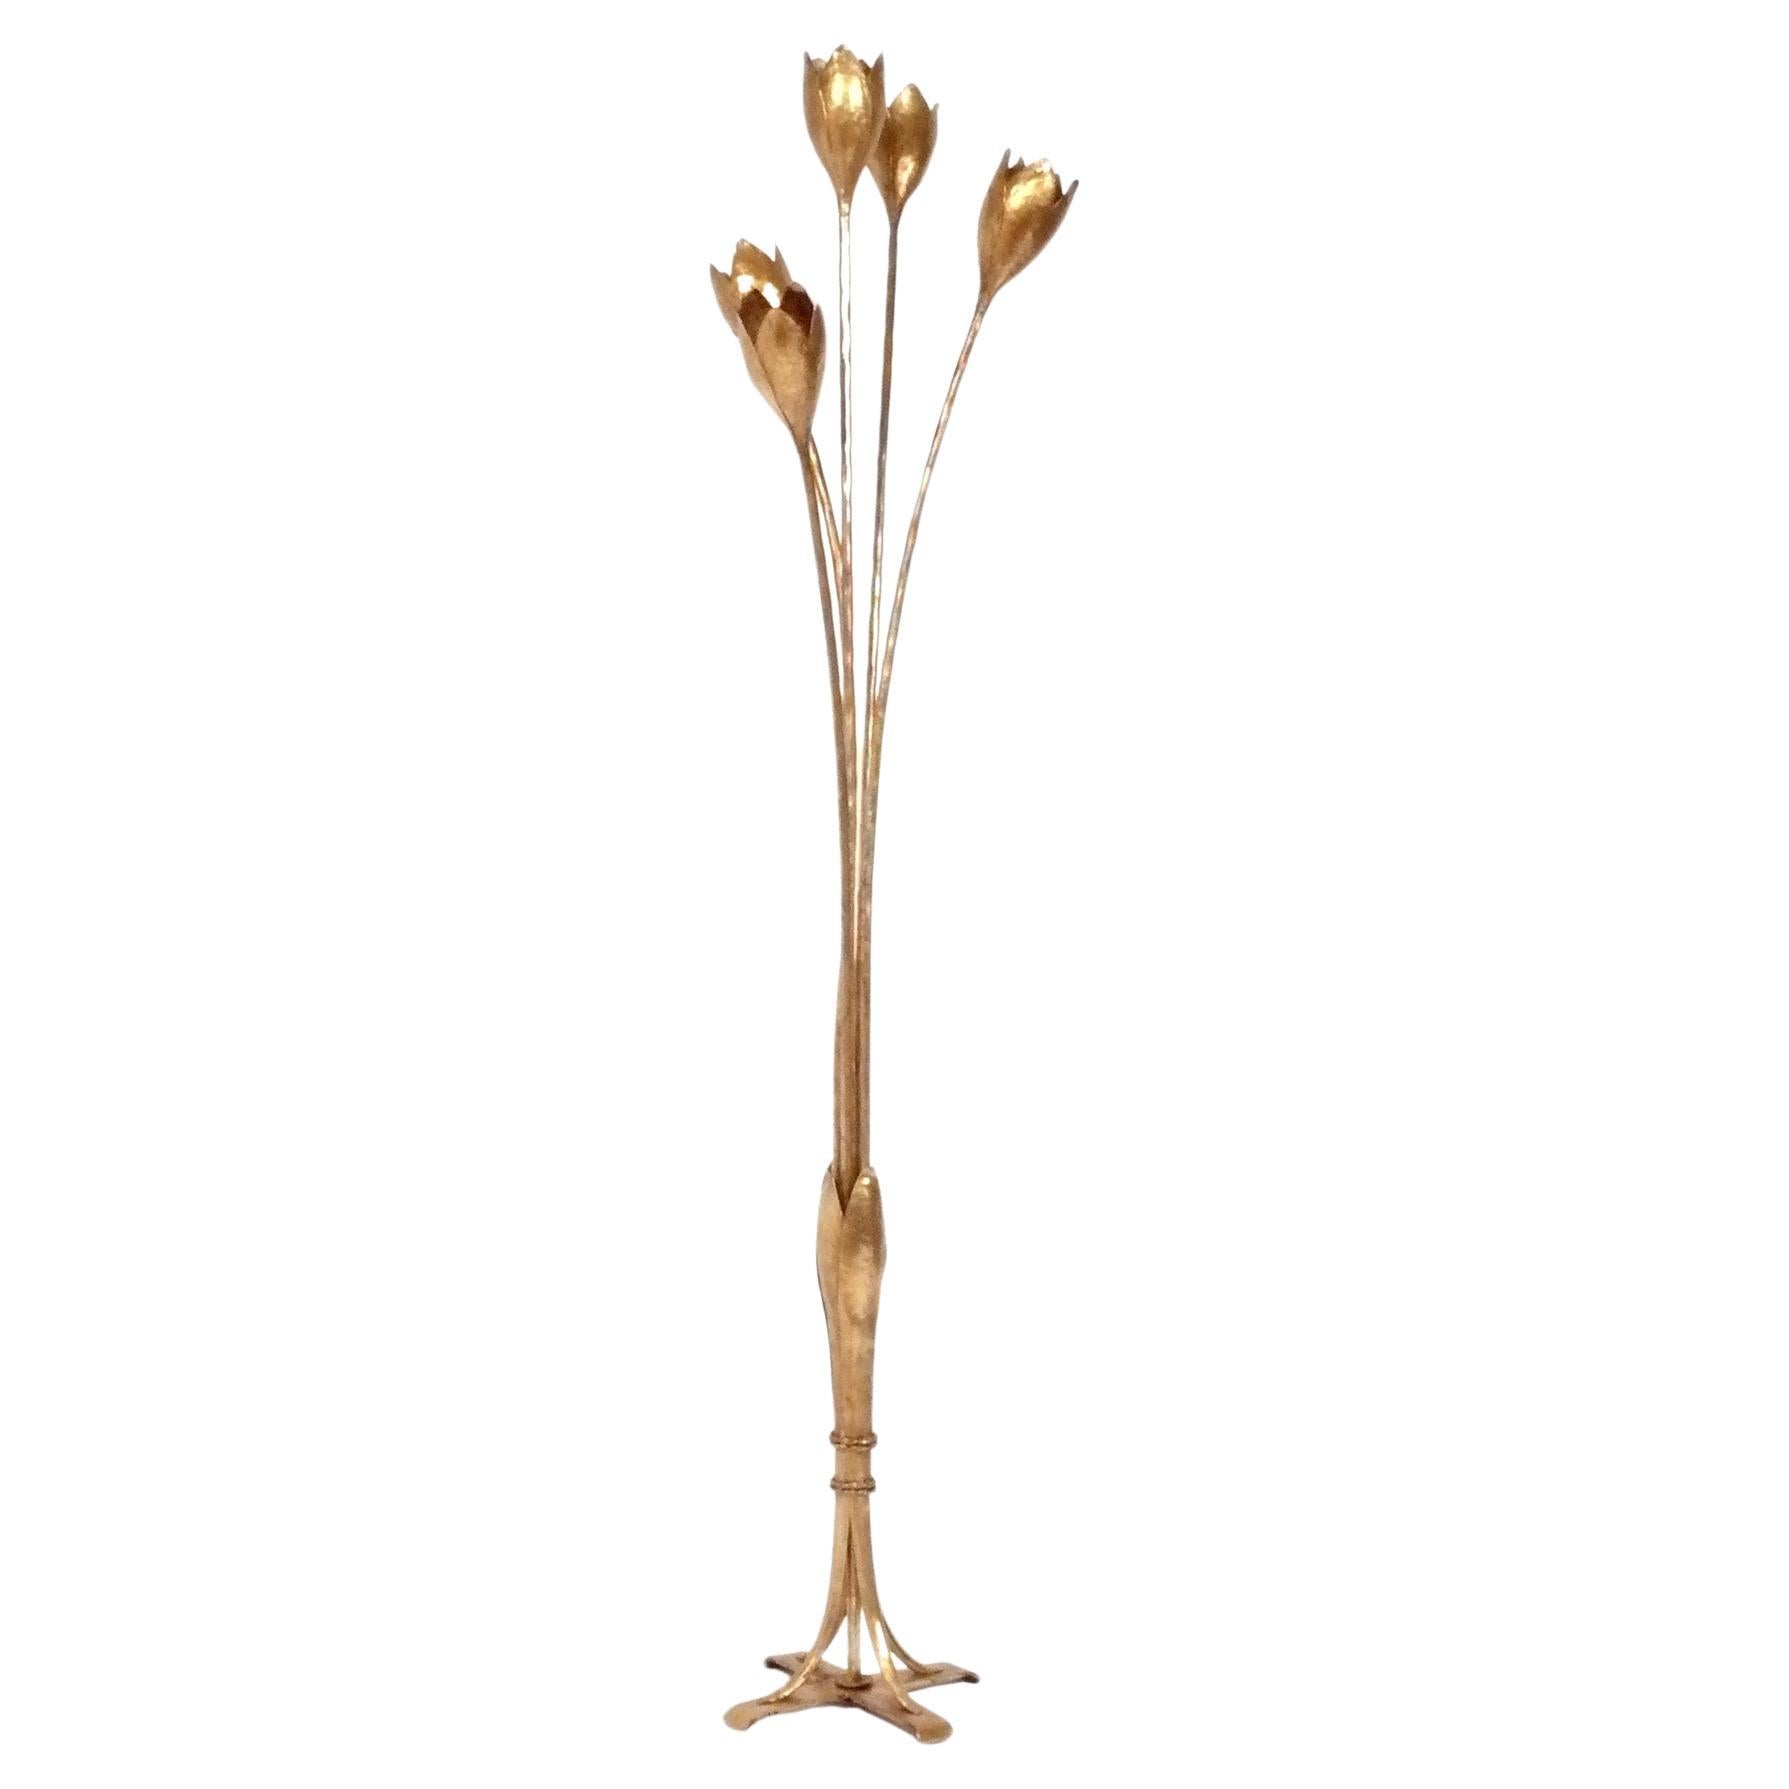 Lampadaire floriforme en métal doré des années 1940 attribué à la Maison Bagues